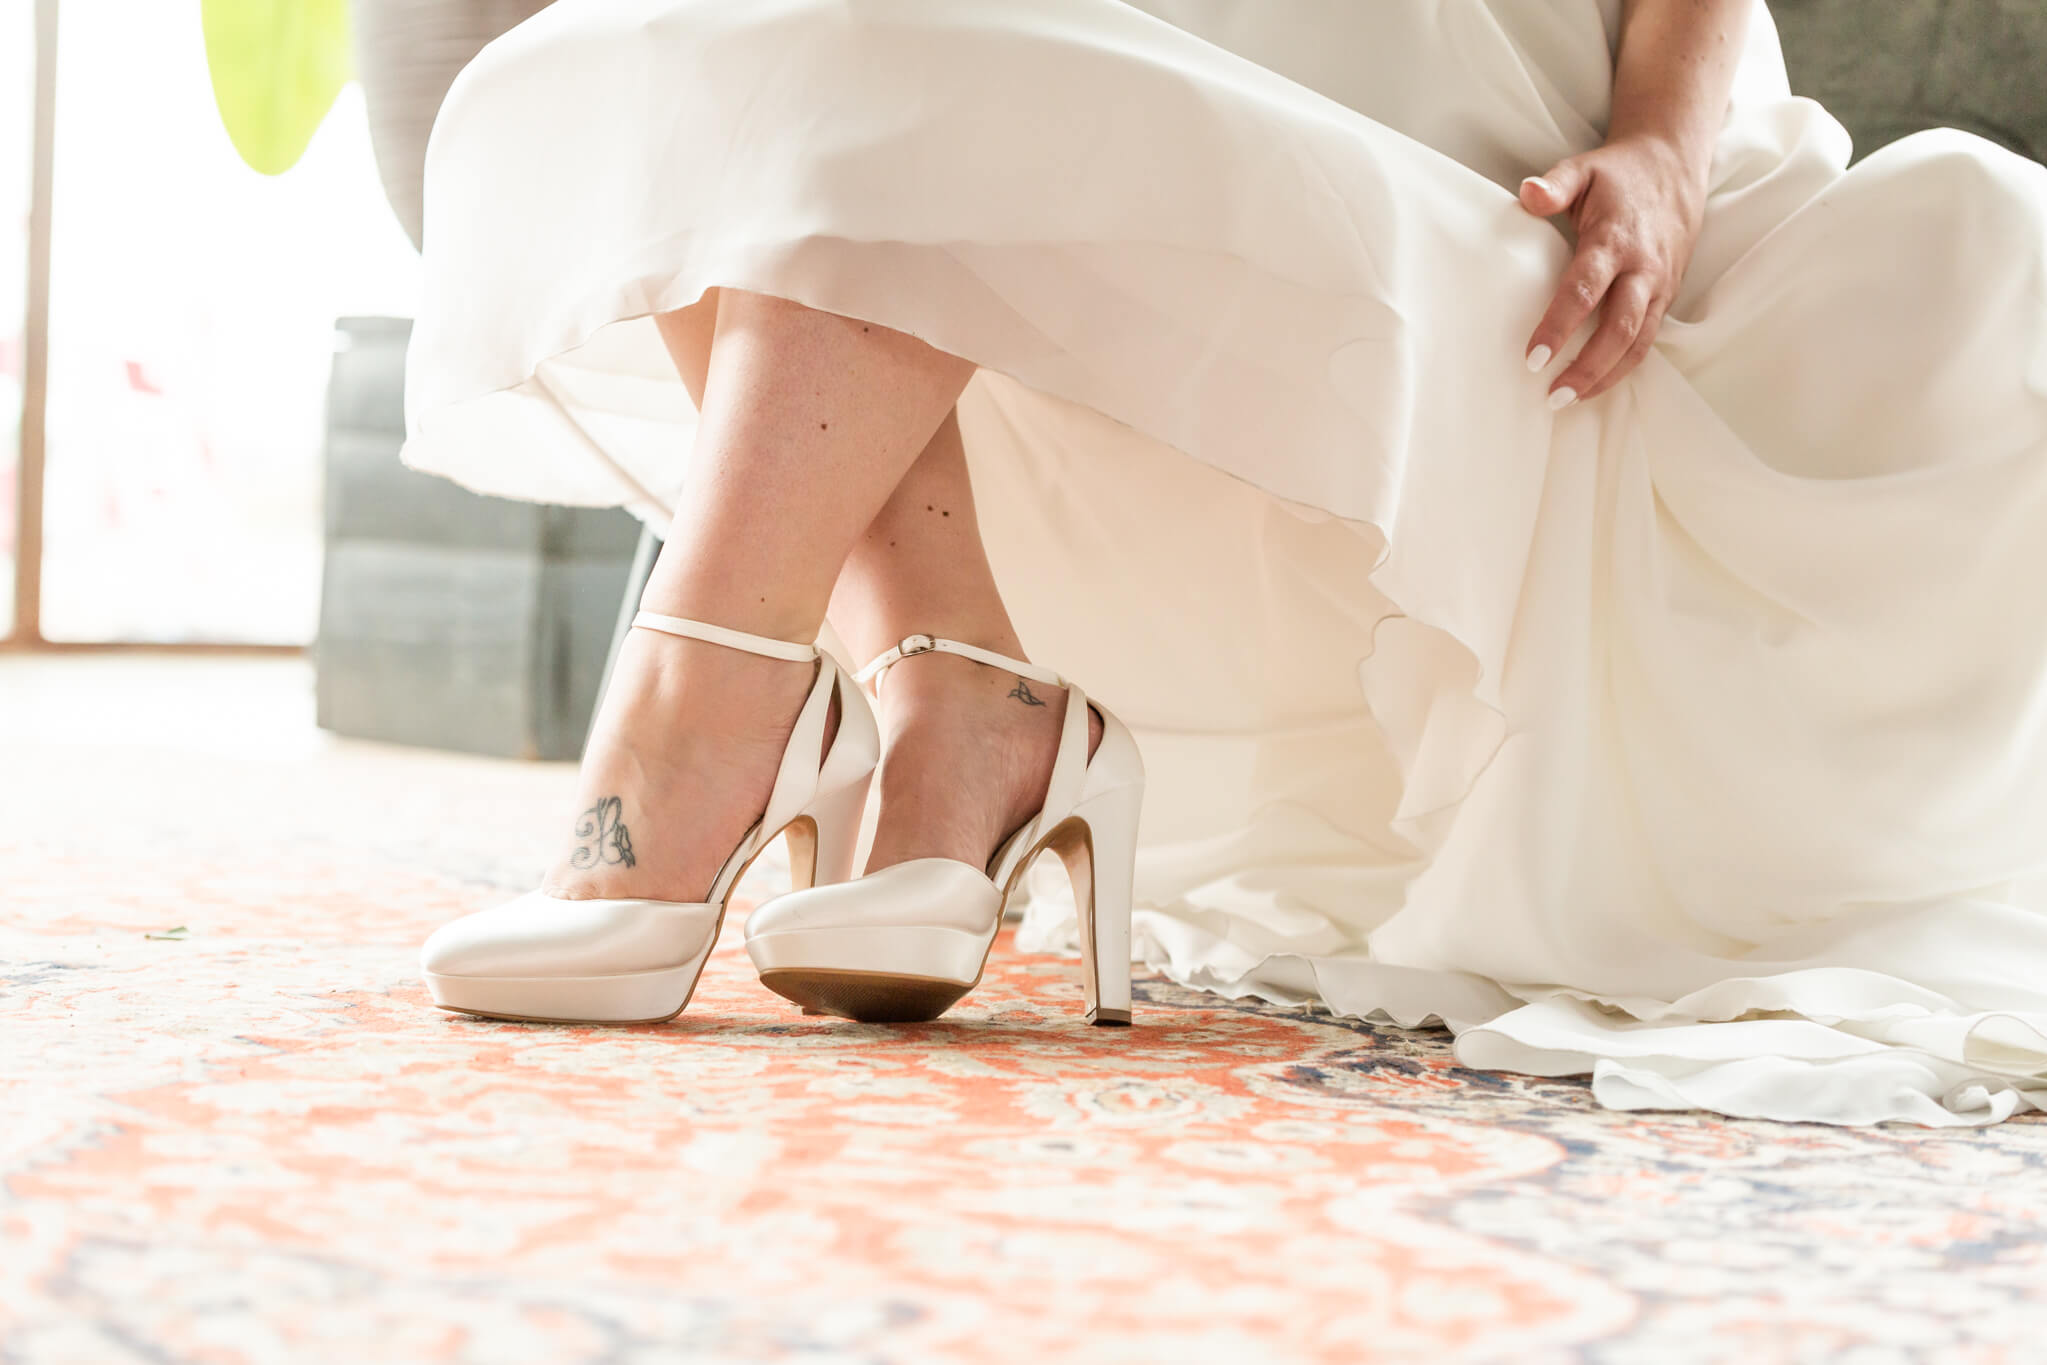 Schoenen van de bruid. Detailfoto van de bruidschoen en een stukje bruidsjurk.